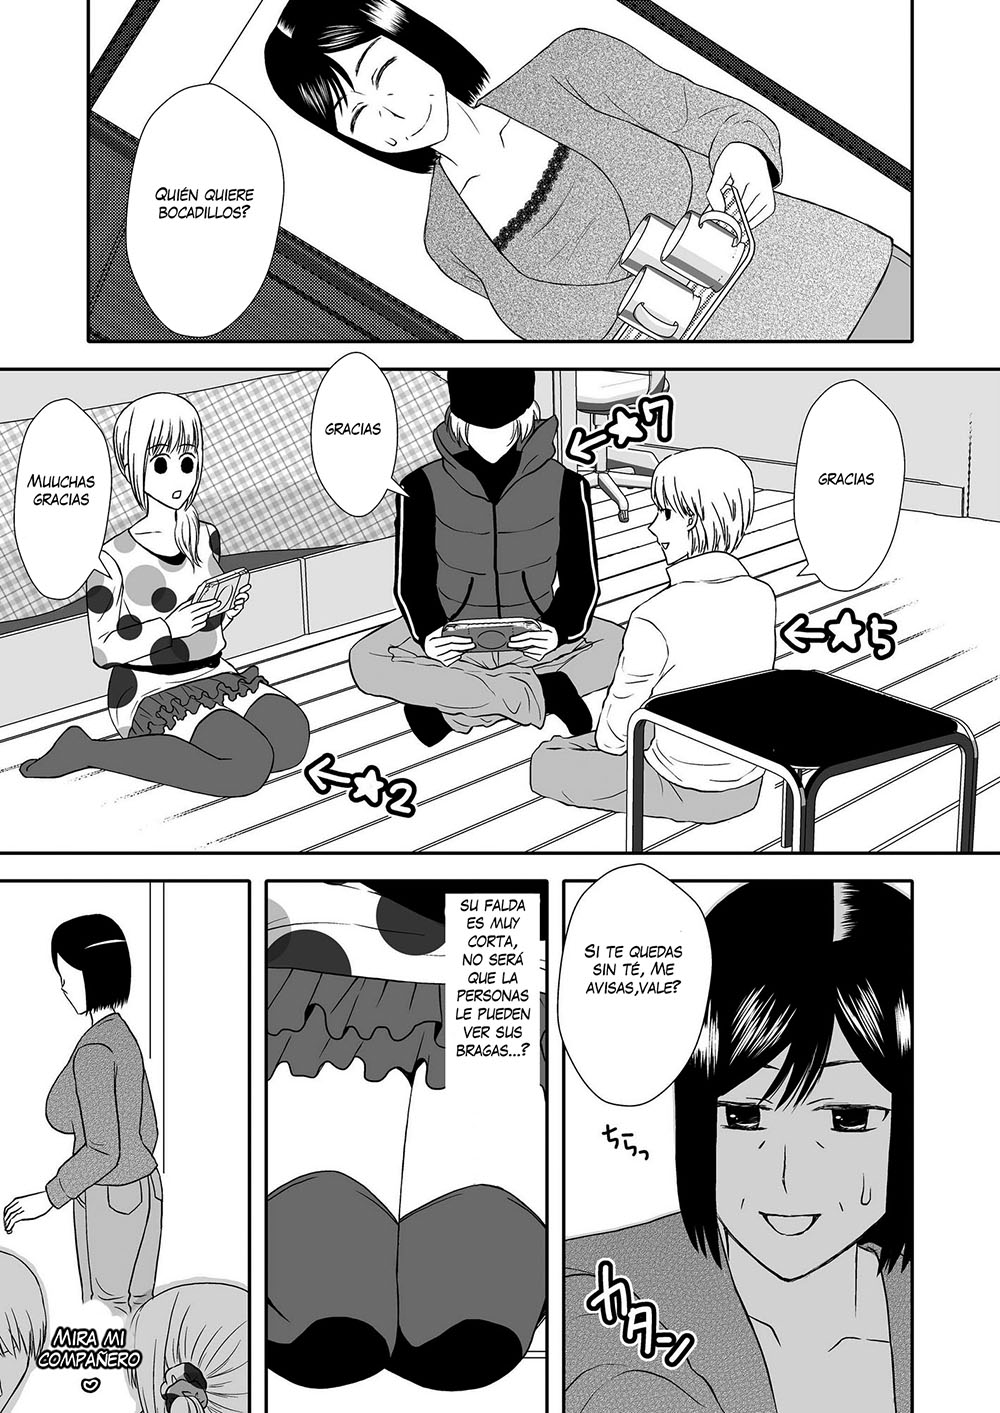 Kaa-san to Koibito Seikatsu #2 - 8 - Comics Porno - Hentai Manga - Cartoon XXX